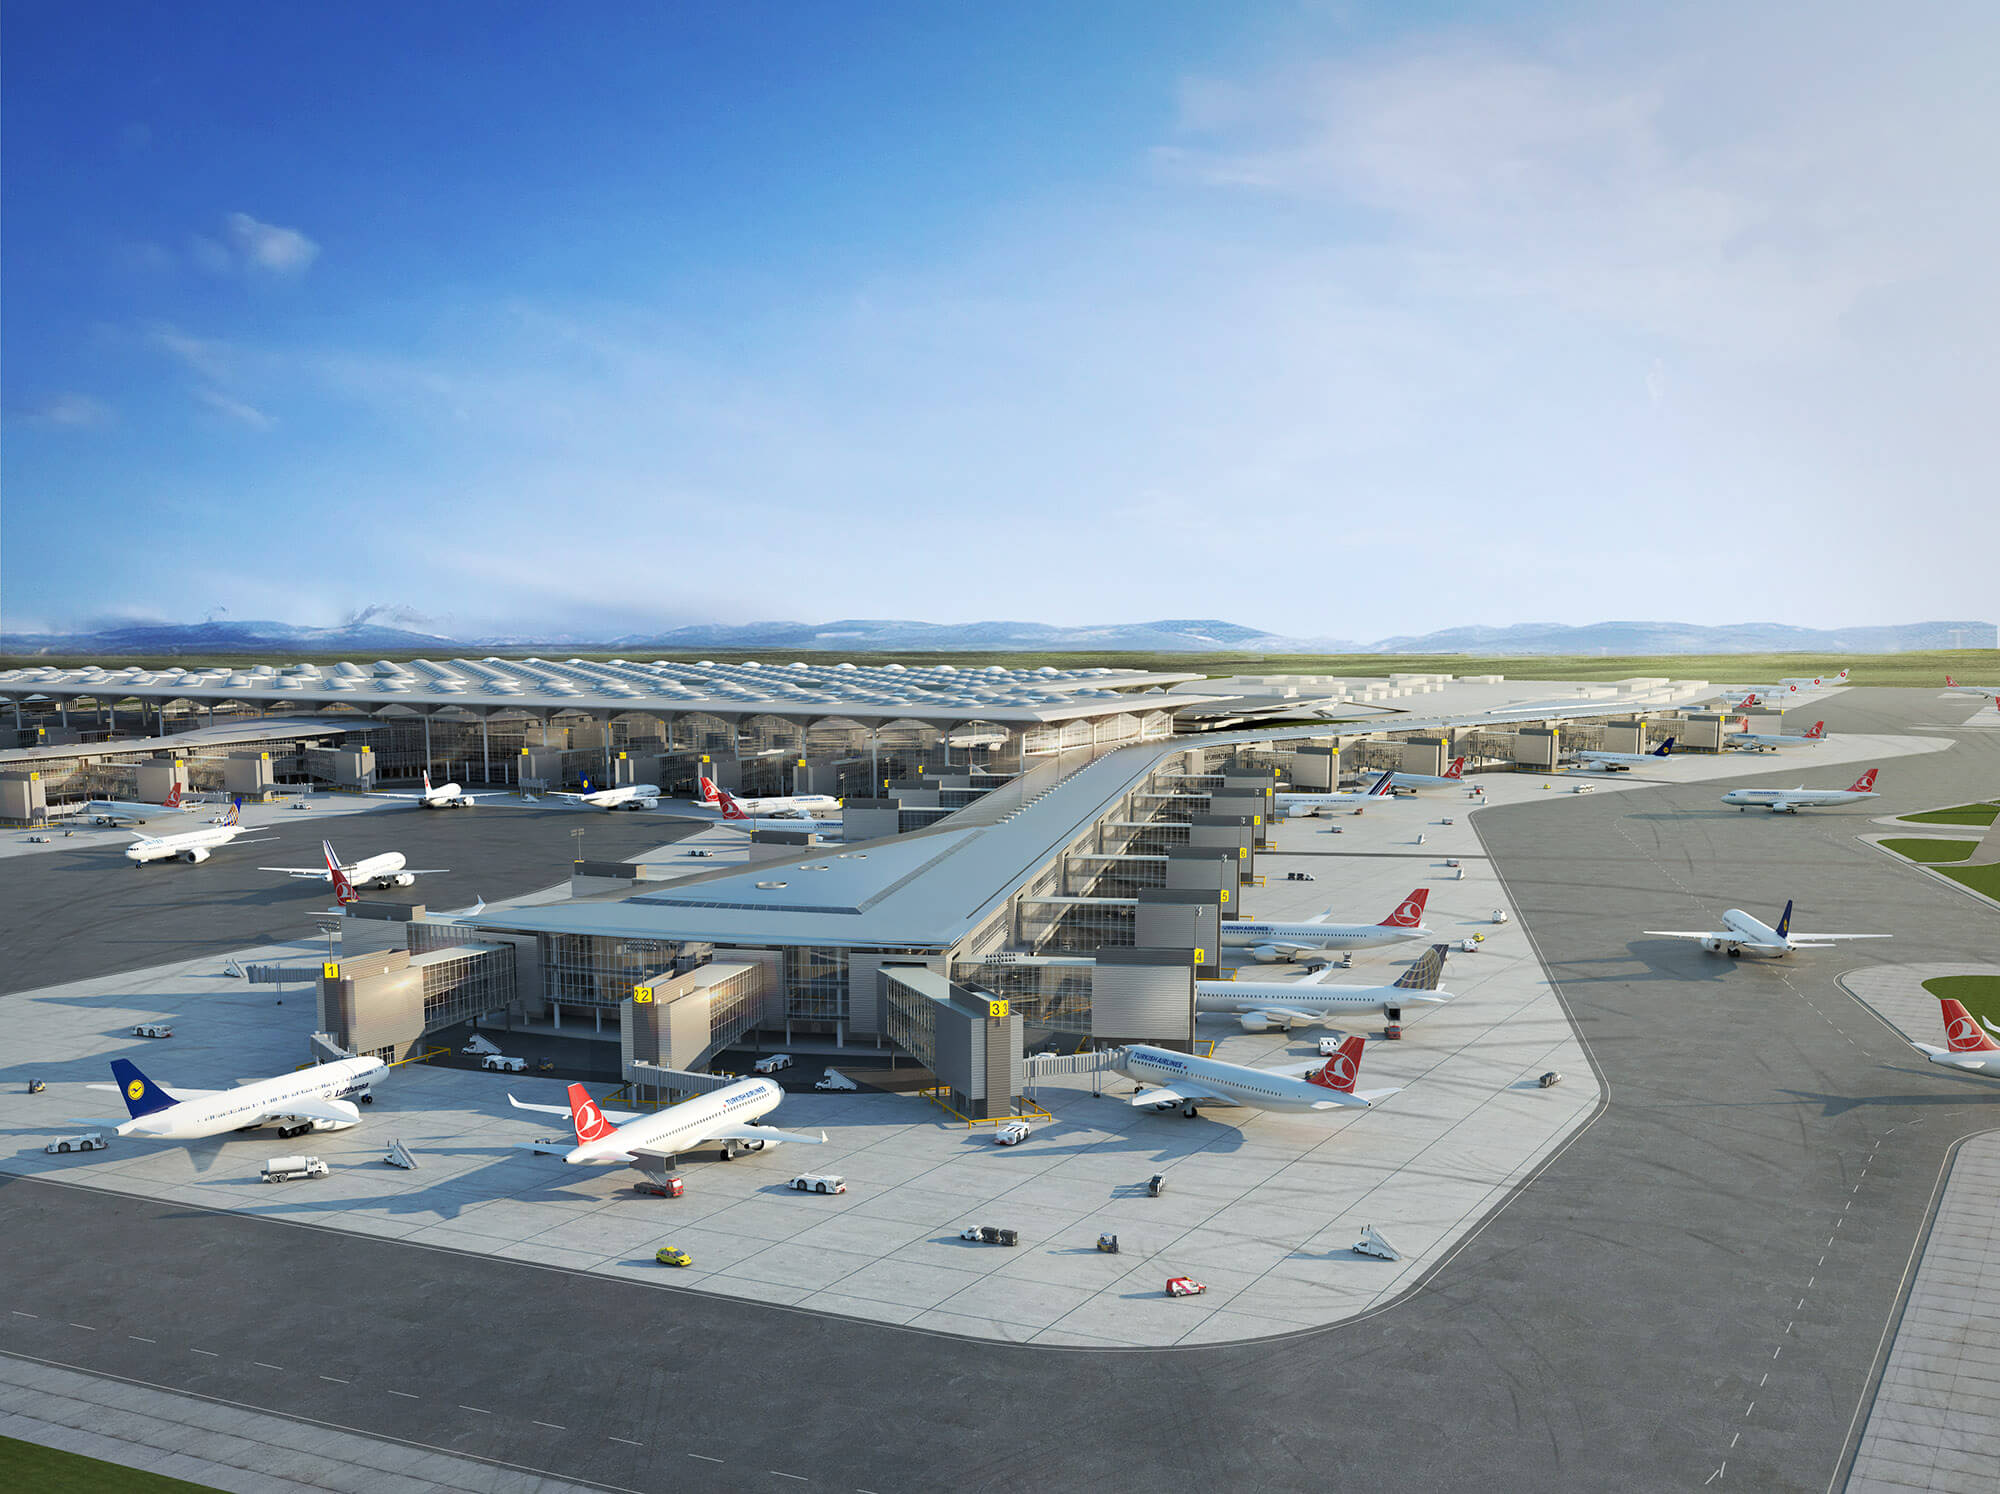 Nuevo Aeropuerto de Estambul image1